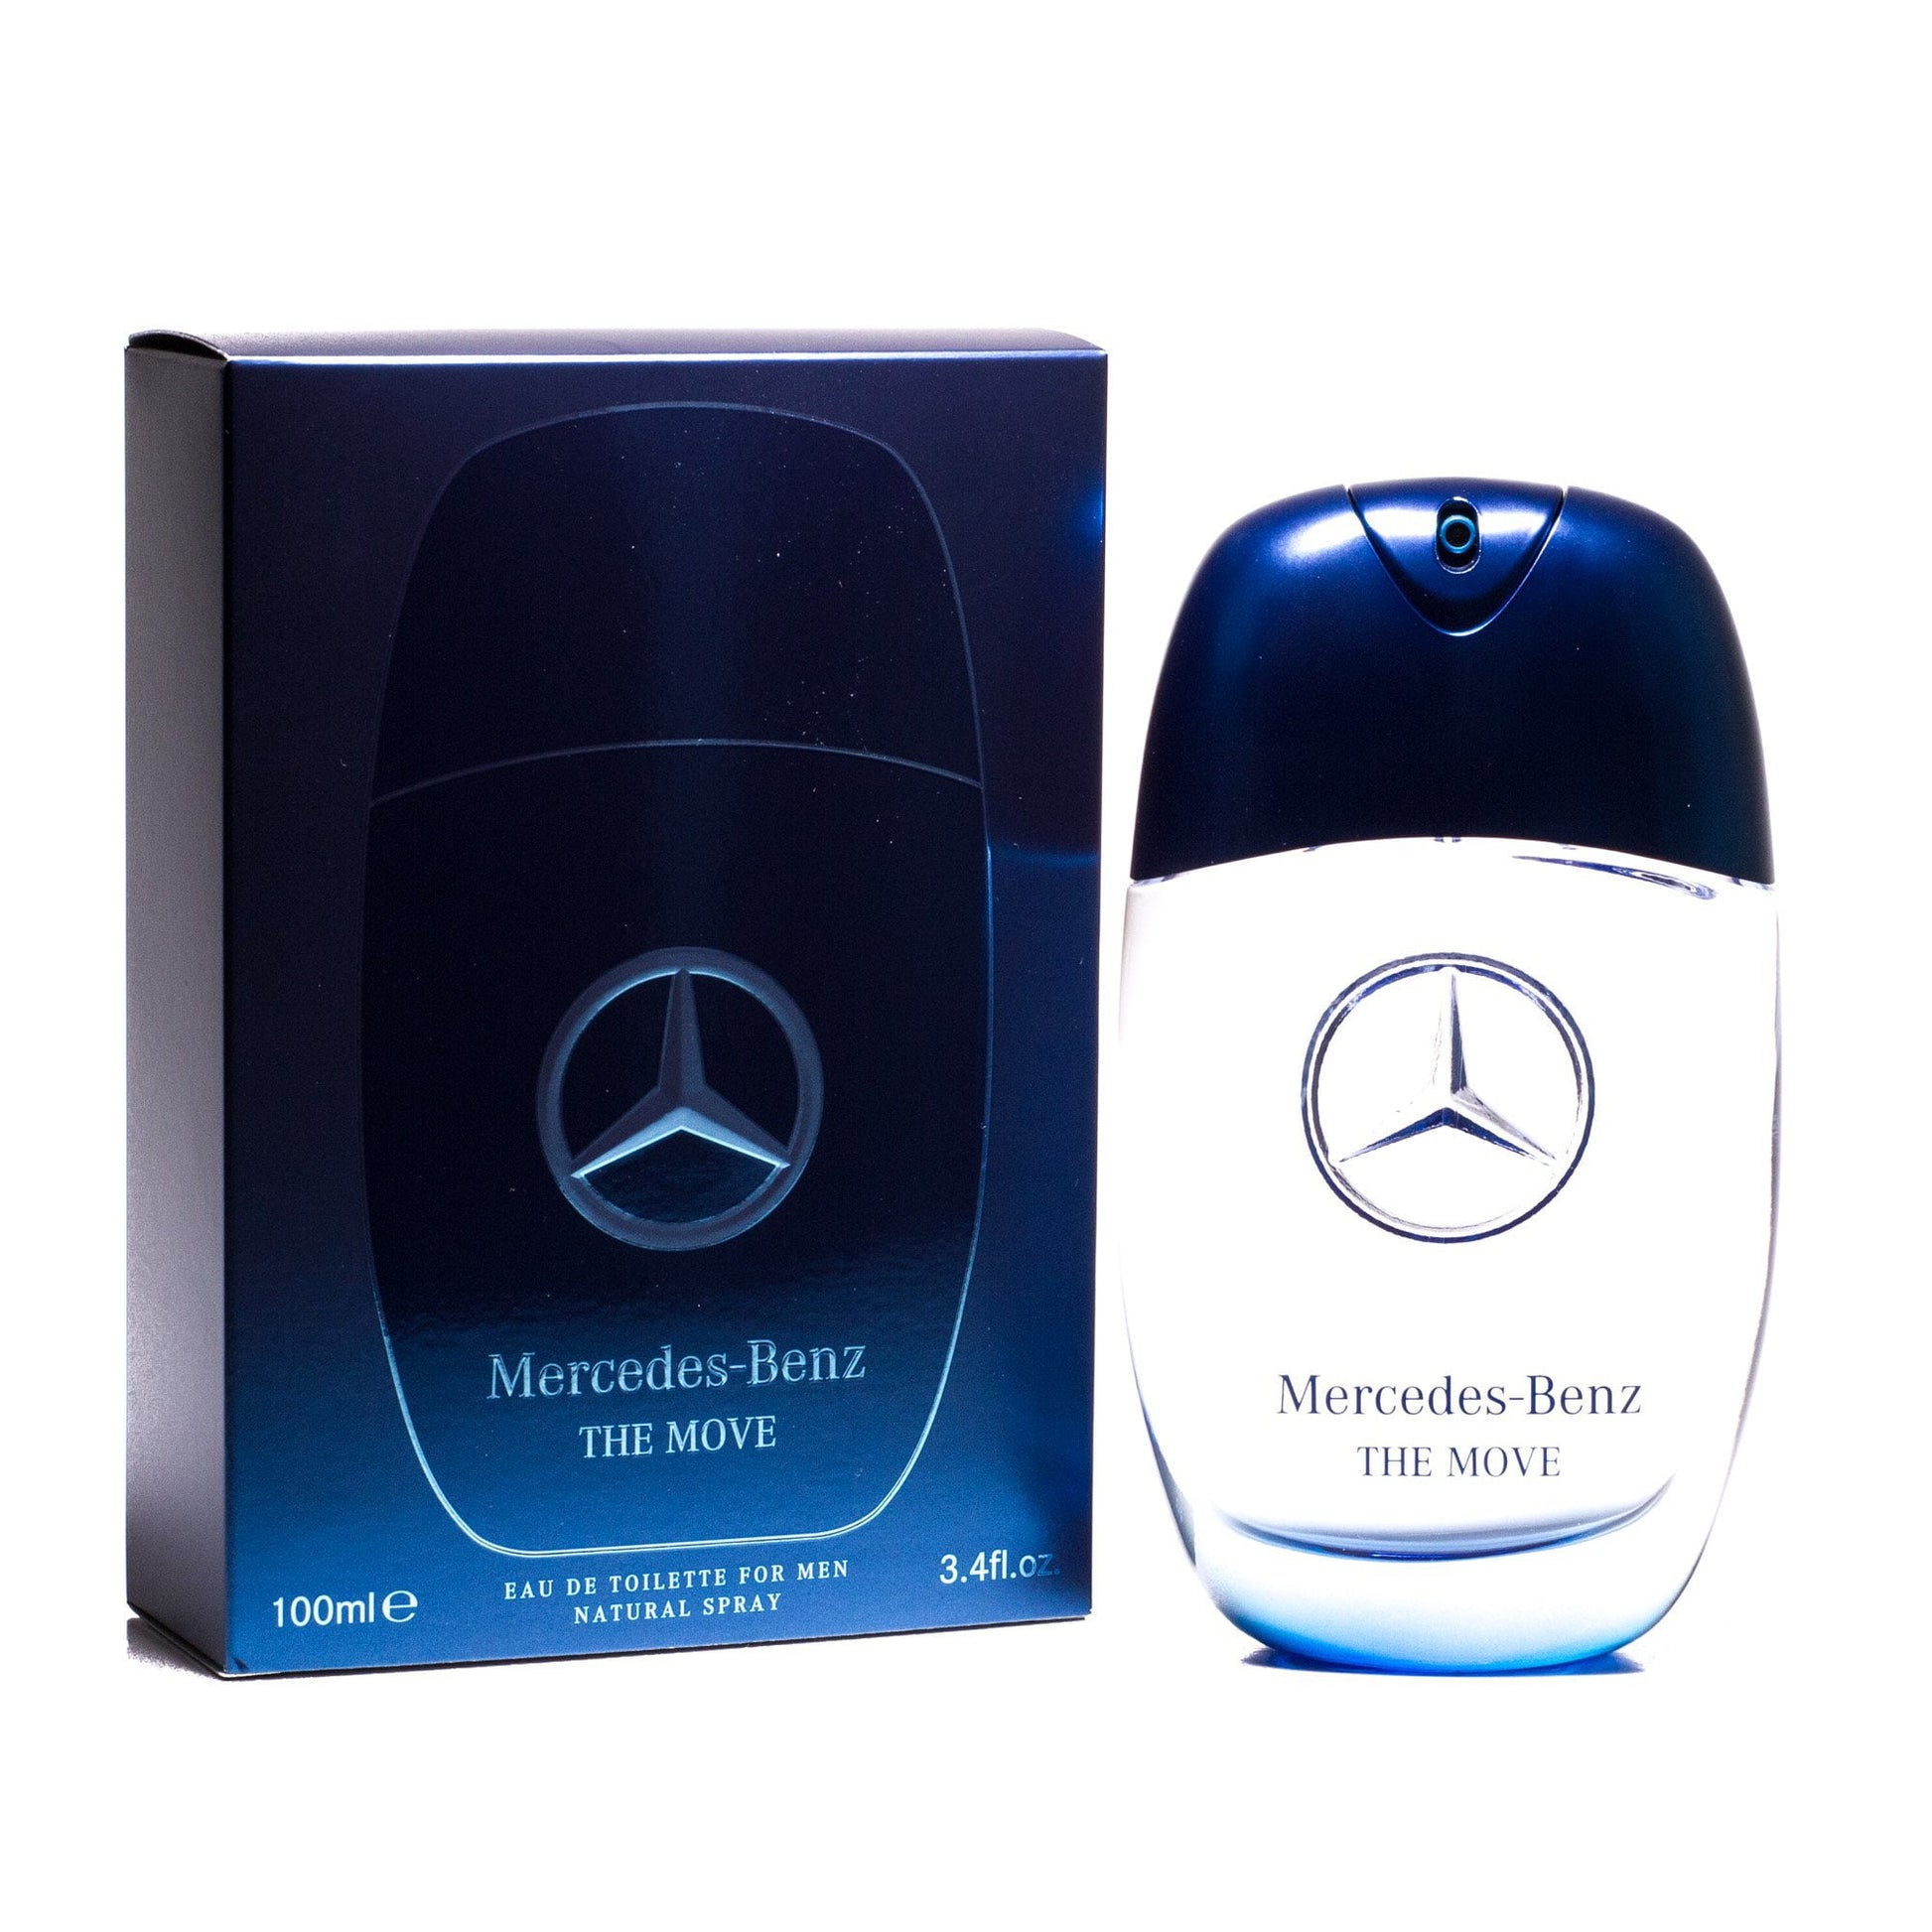 The Move Eau de Toilette Spray for Men by Mercedes-Benz, Product image 1